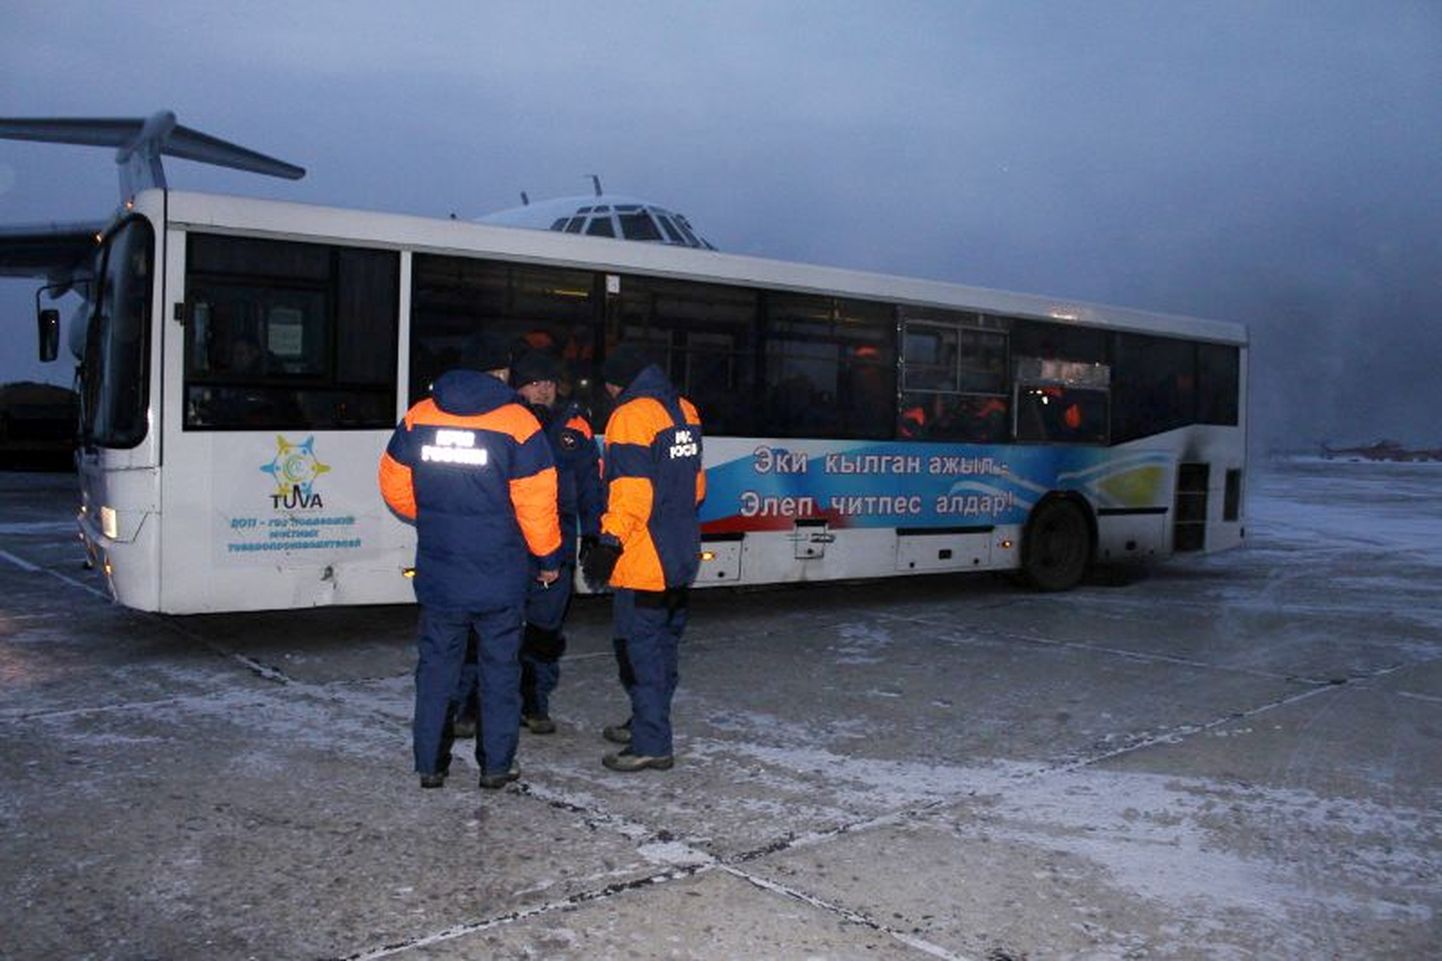 Vene eriolukordade ministeeriumi päästjad bussi juures.